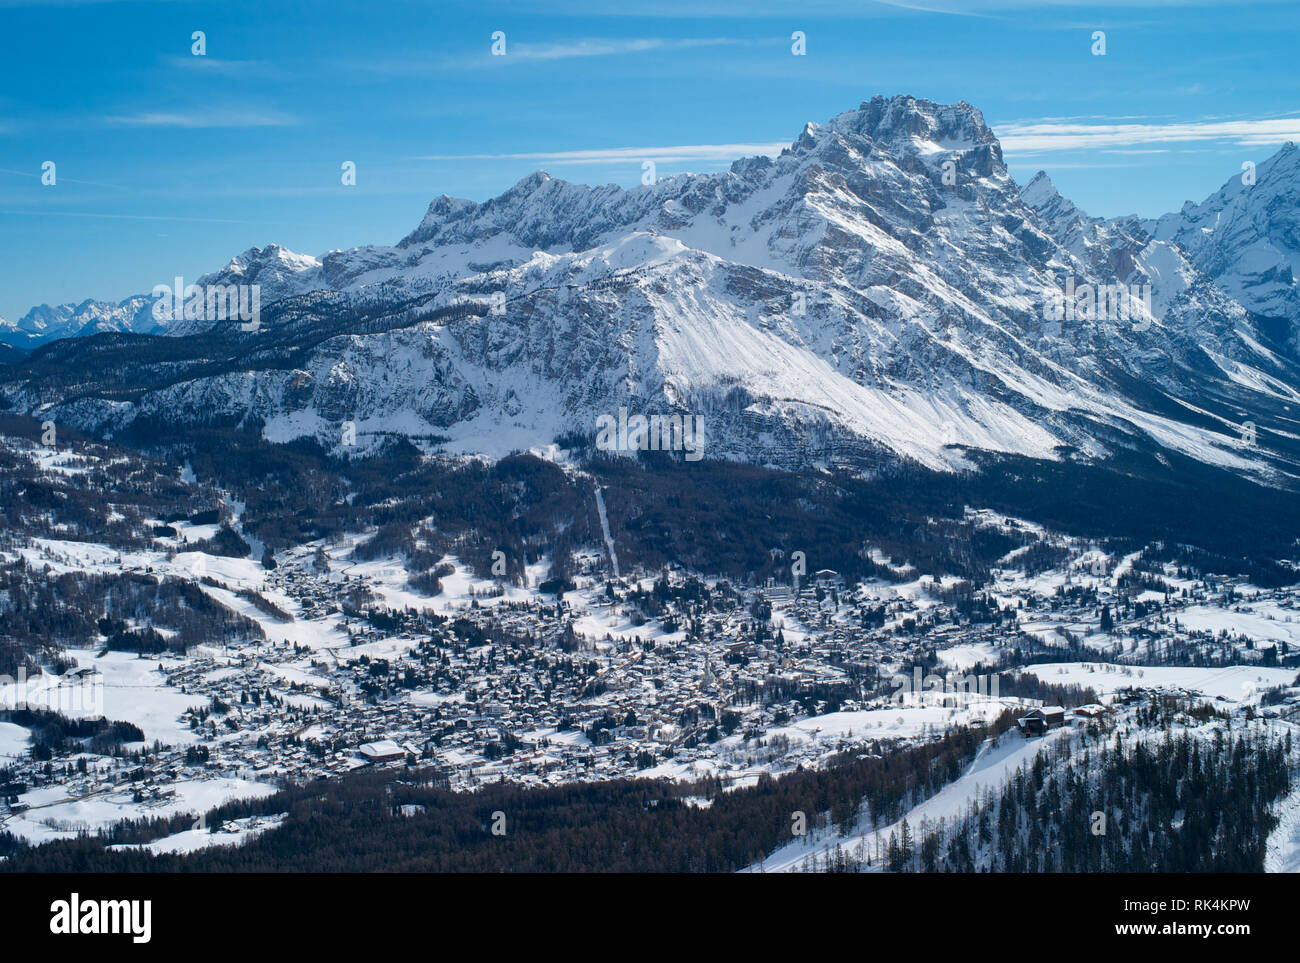 Das romantische, Verschneite Skigebiet Cortina d'Ampezzo in den italienischen Dolomiten von tofana gesehen mit Col Druscie im Vordergrund. Stockfoto